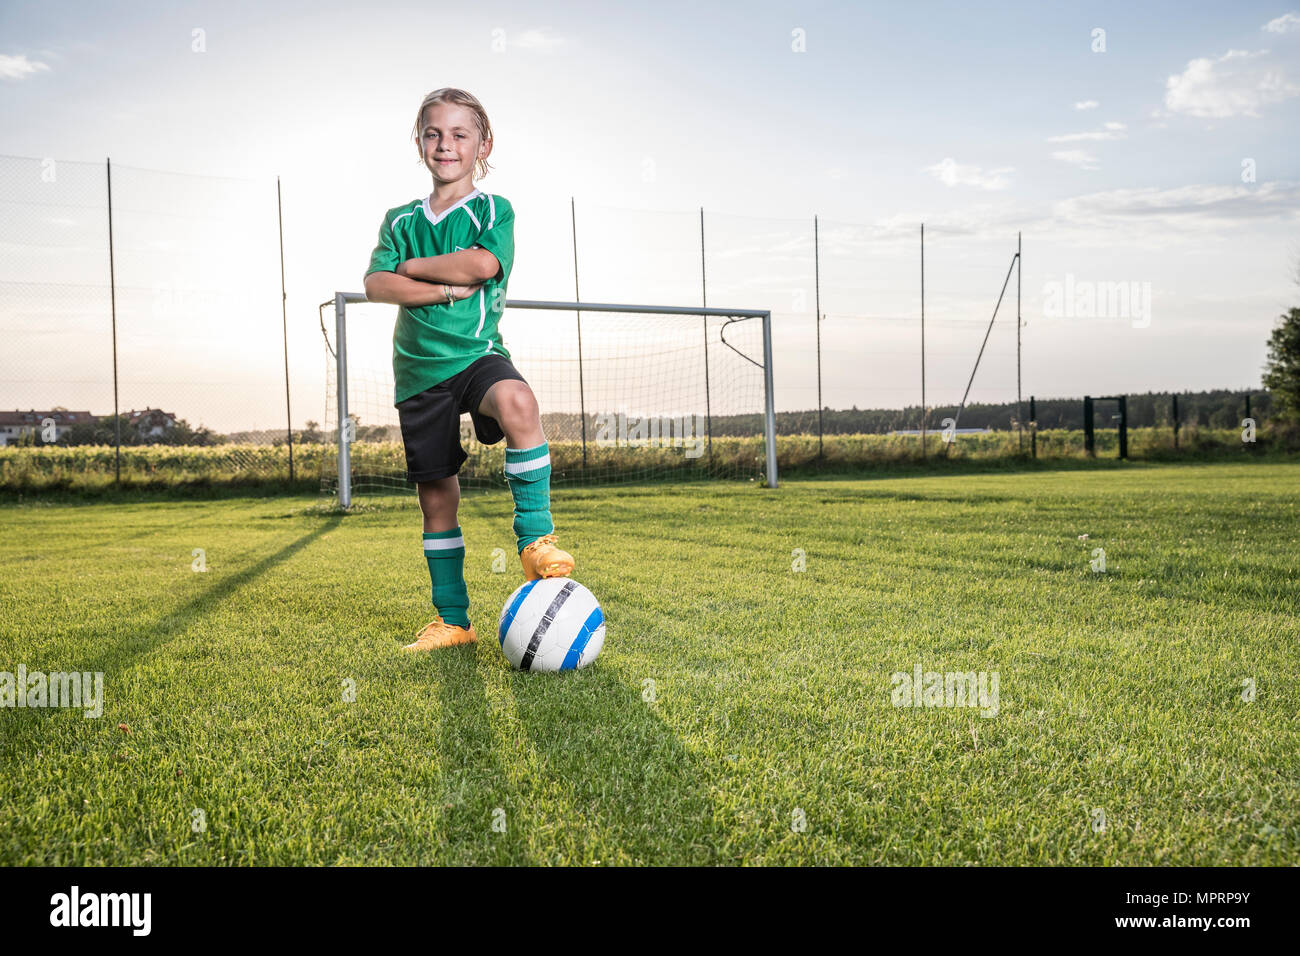 Retrato de seguros joven futbolista con balón de fútbol Foto de stock